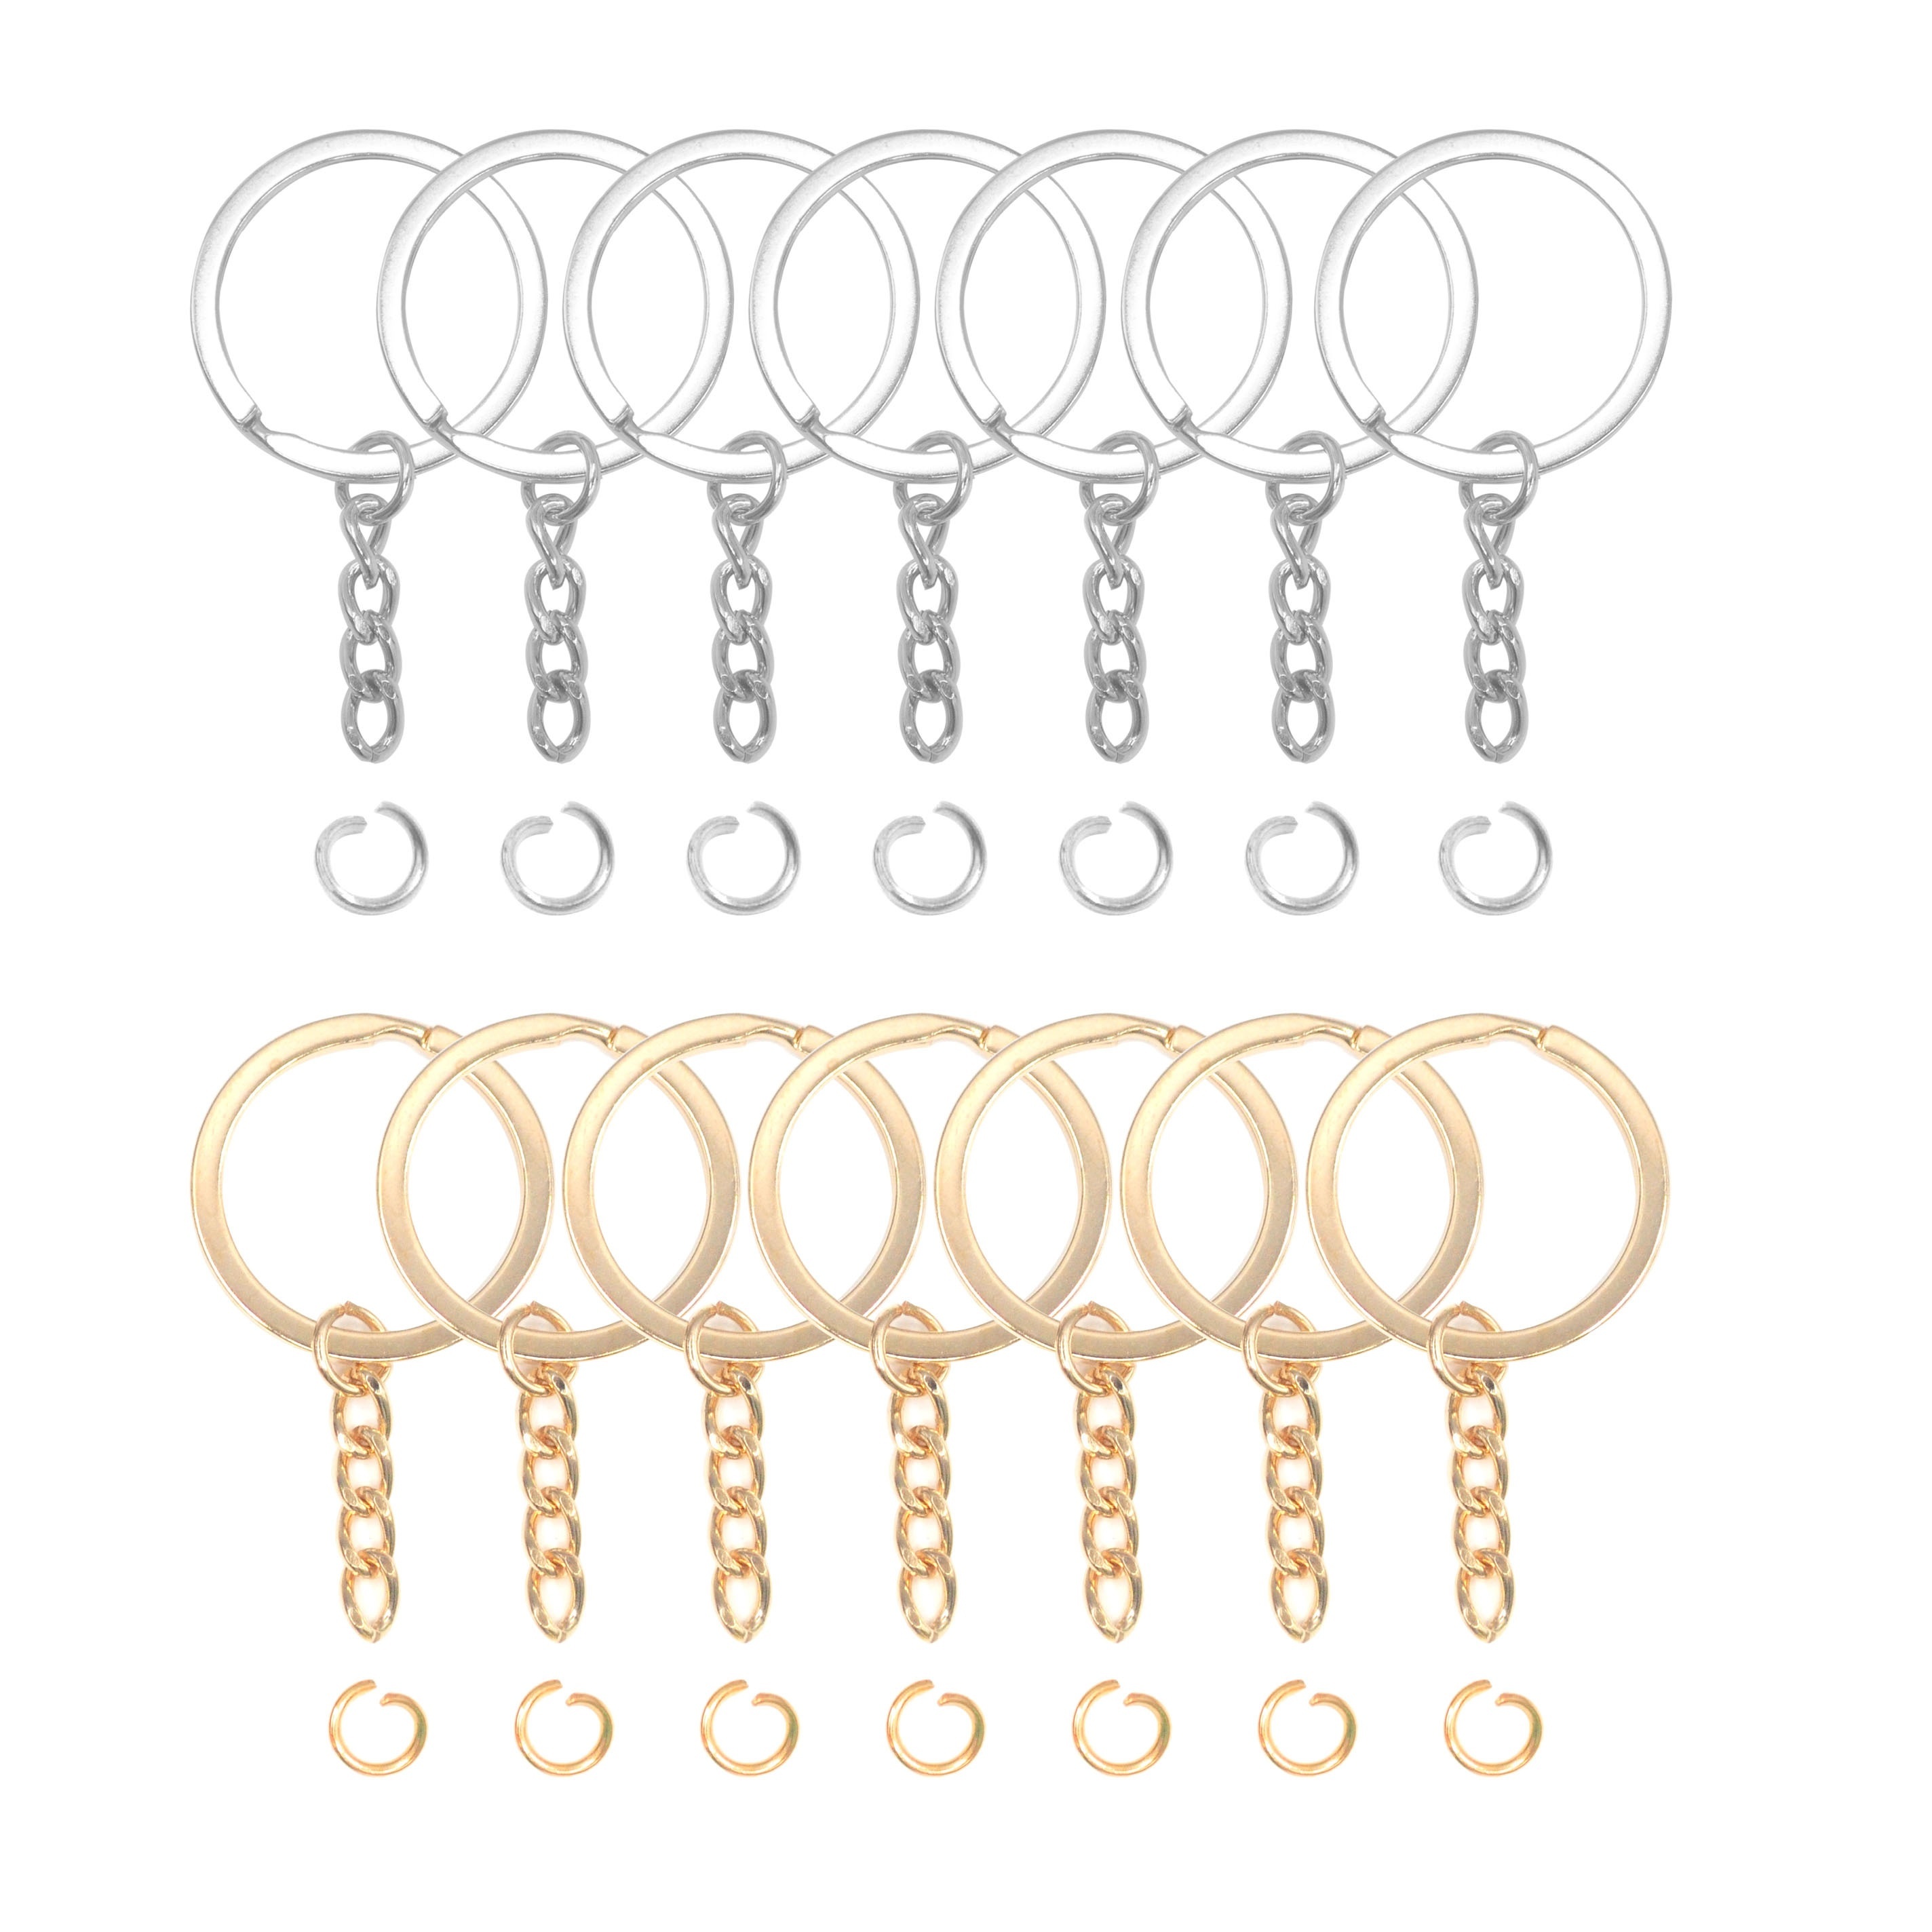  Llavero dividido 30 piezas con cadena y anillos de saltar  anillos de metal con aros abiertos juego de llaveros redondos, oro y plata,  para llavero y manualidades : Productos de Oficina